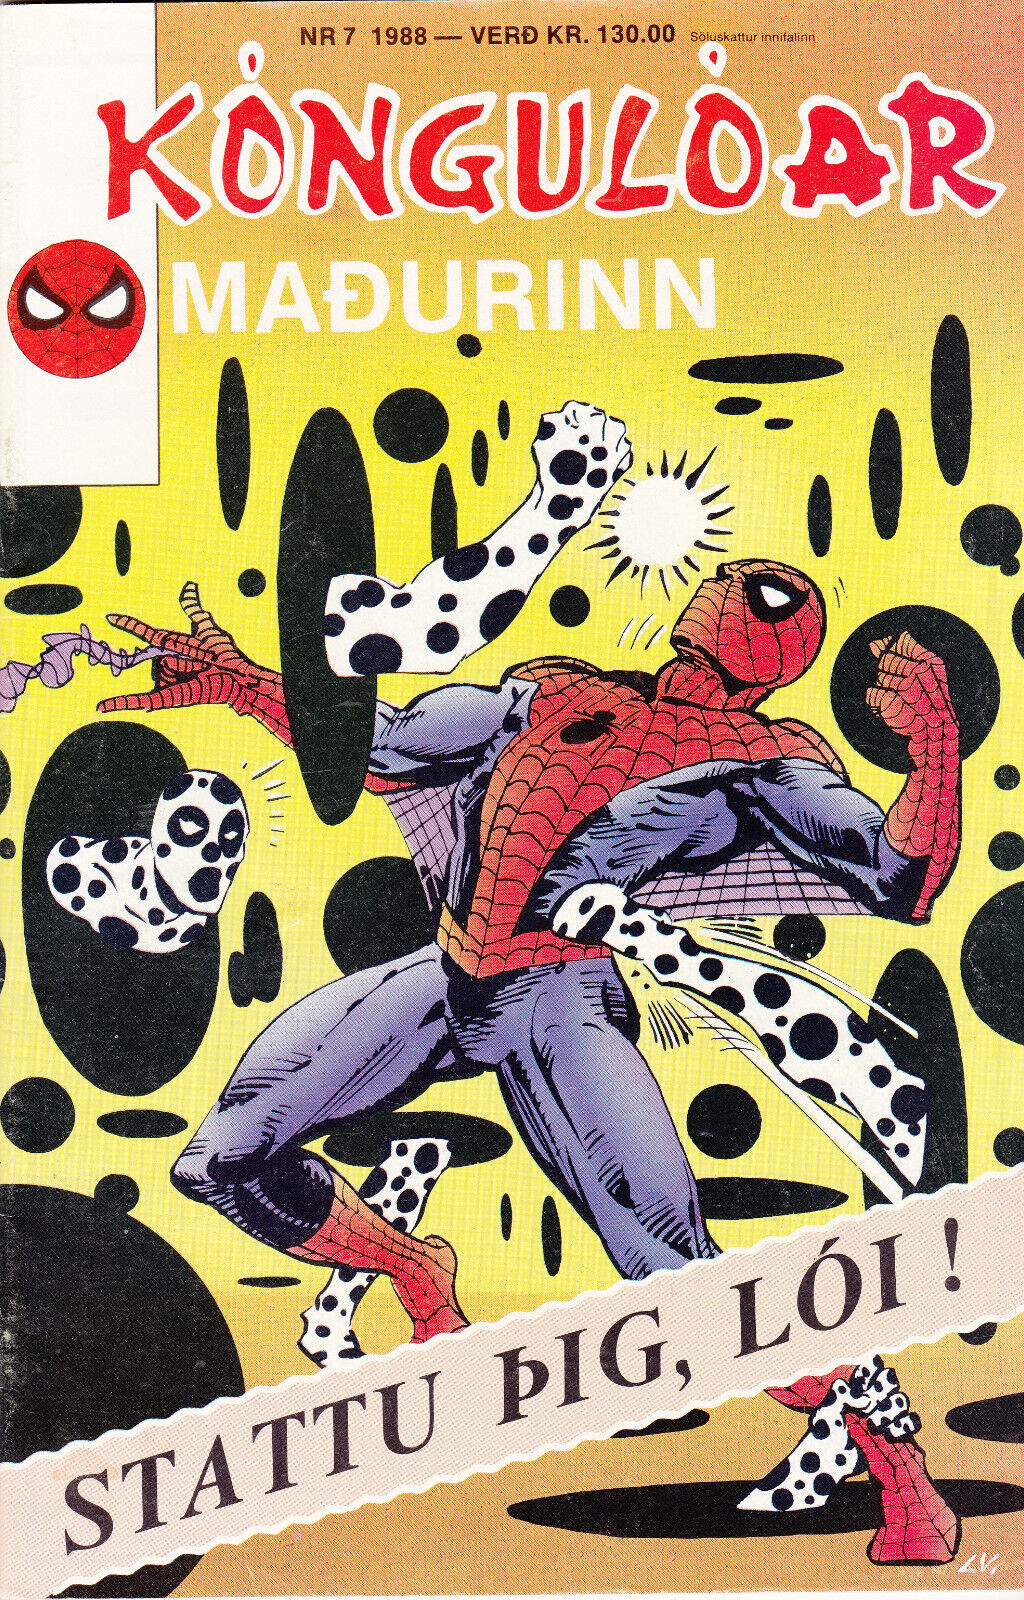 Spider-Man / Kóngulóarmaðurinn  #7  (1988) in Icelandic 